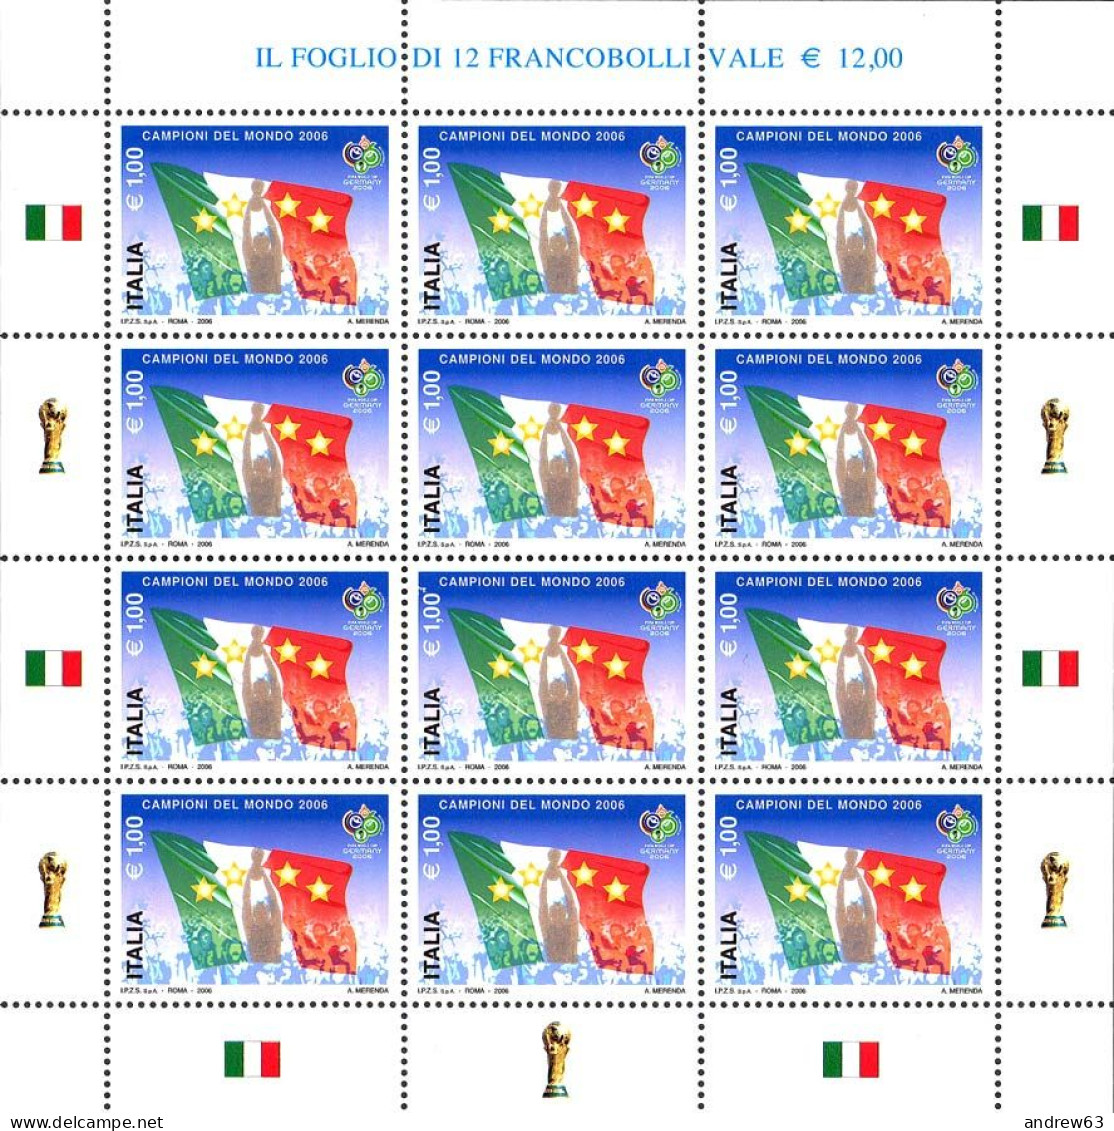 ITALIA - REPUBBLICA ITALIANA - 2006 - 1,00€ Italia Campione Del Mondo - Minifoglio Da 12 Francobolli - MNH - Full Sheets